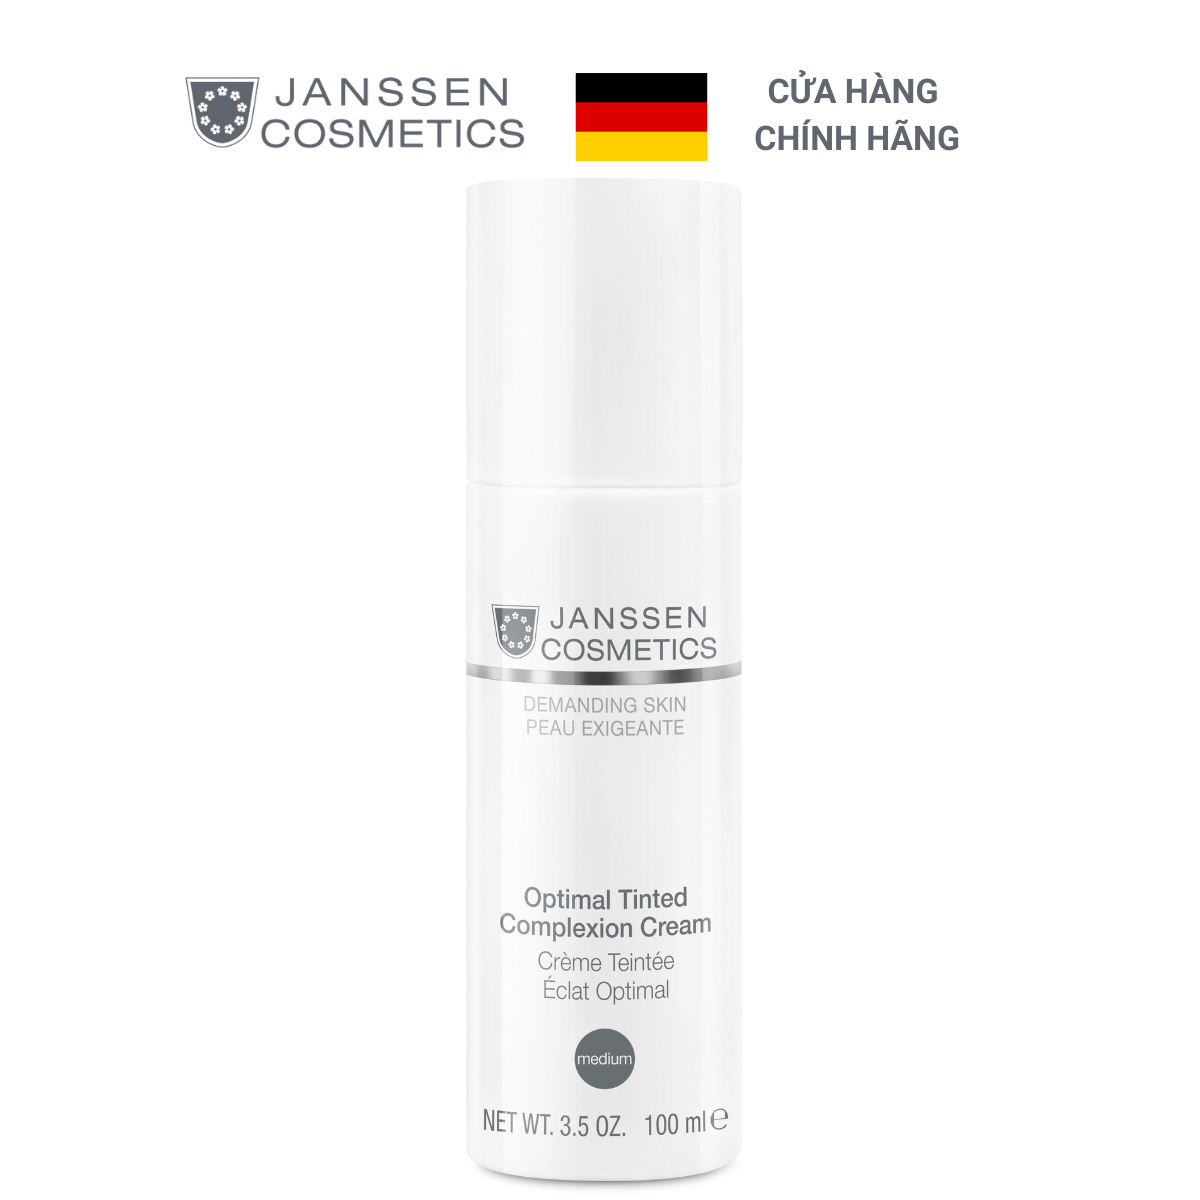  Kem dưỡng chống nắng và che khuyết điểm - Janssen Cosmetics Optimal Tinted Complexion Cream 100ml 